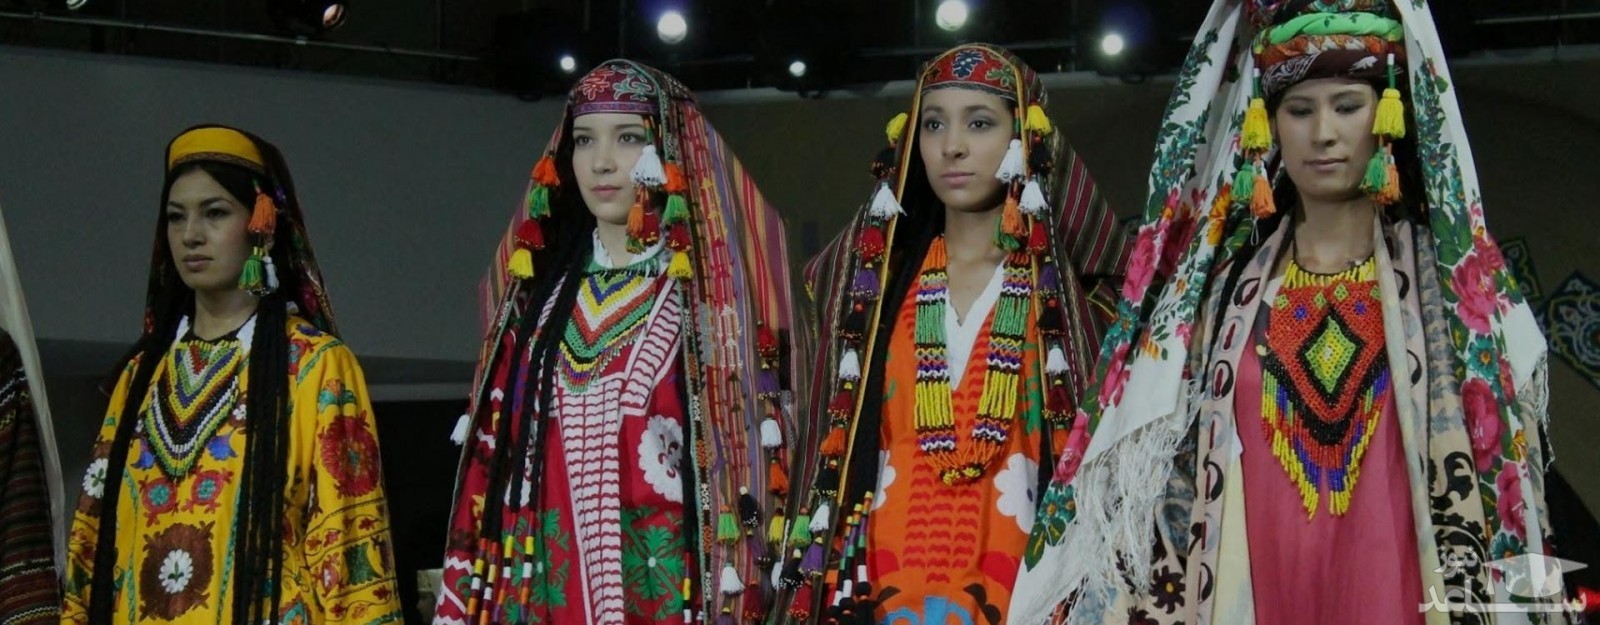 لباس سنتی زنان ازبکی